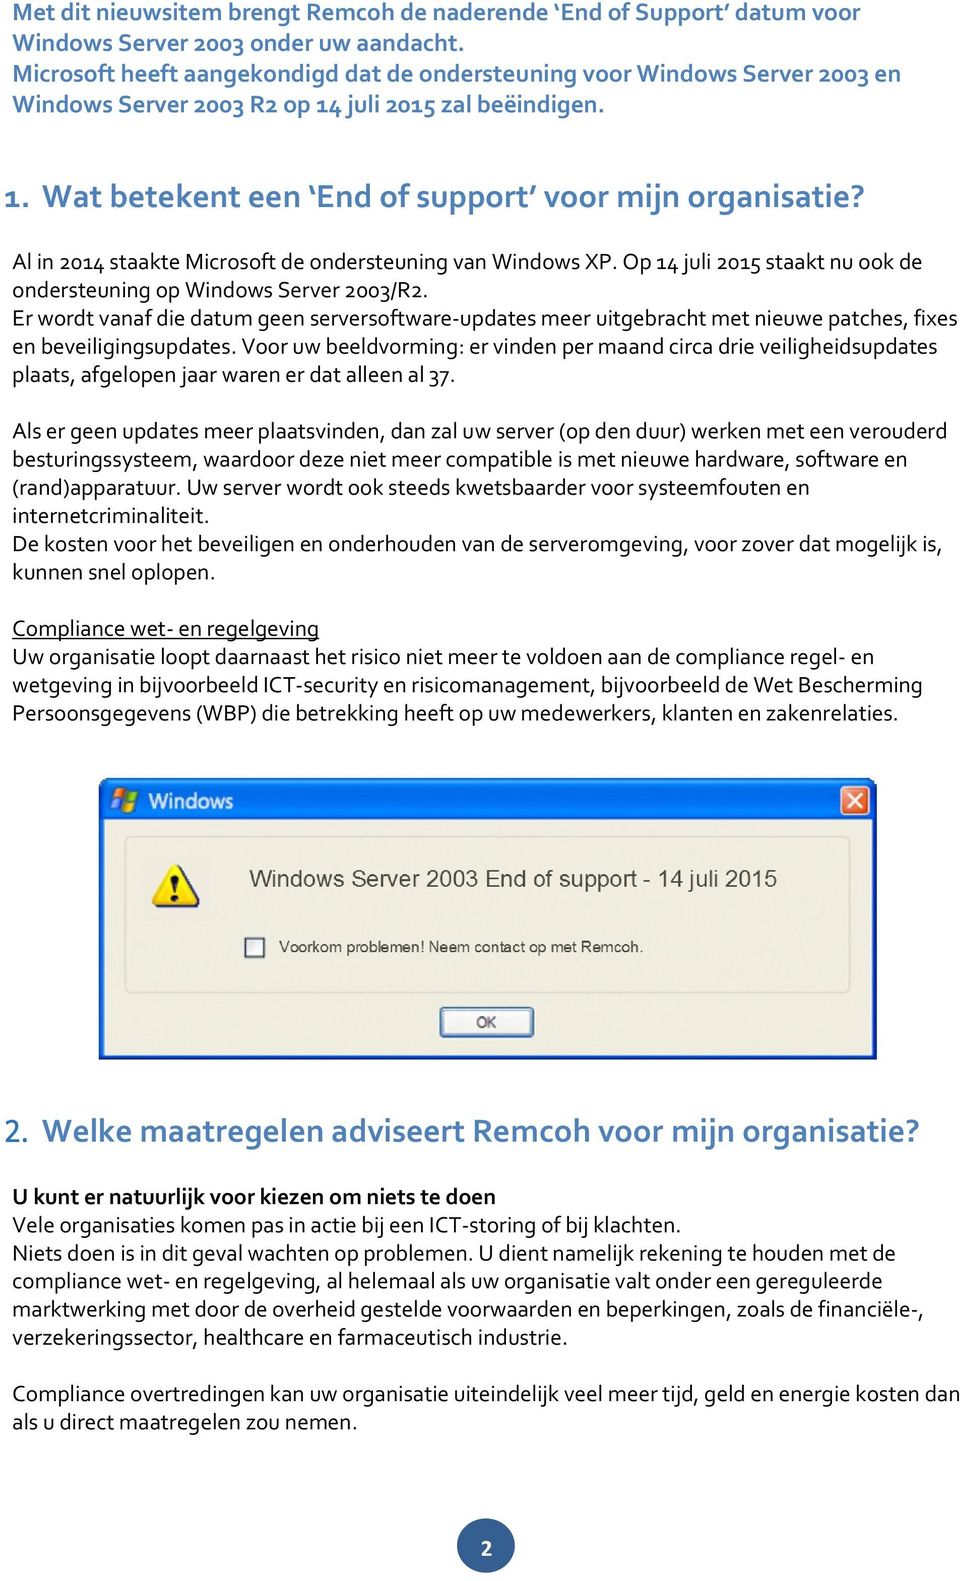 Al in 2014 staakte Microsoft de ondersteuning van Windows XP. Op 14 juli 2015 staakt nu ook de ondersteuning op Windows Server 2003/R2.